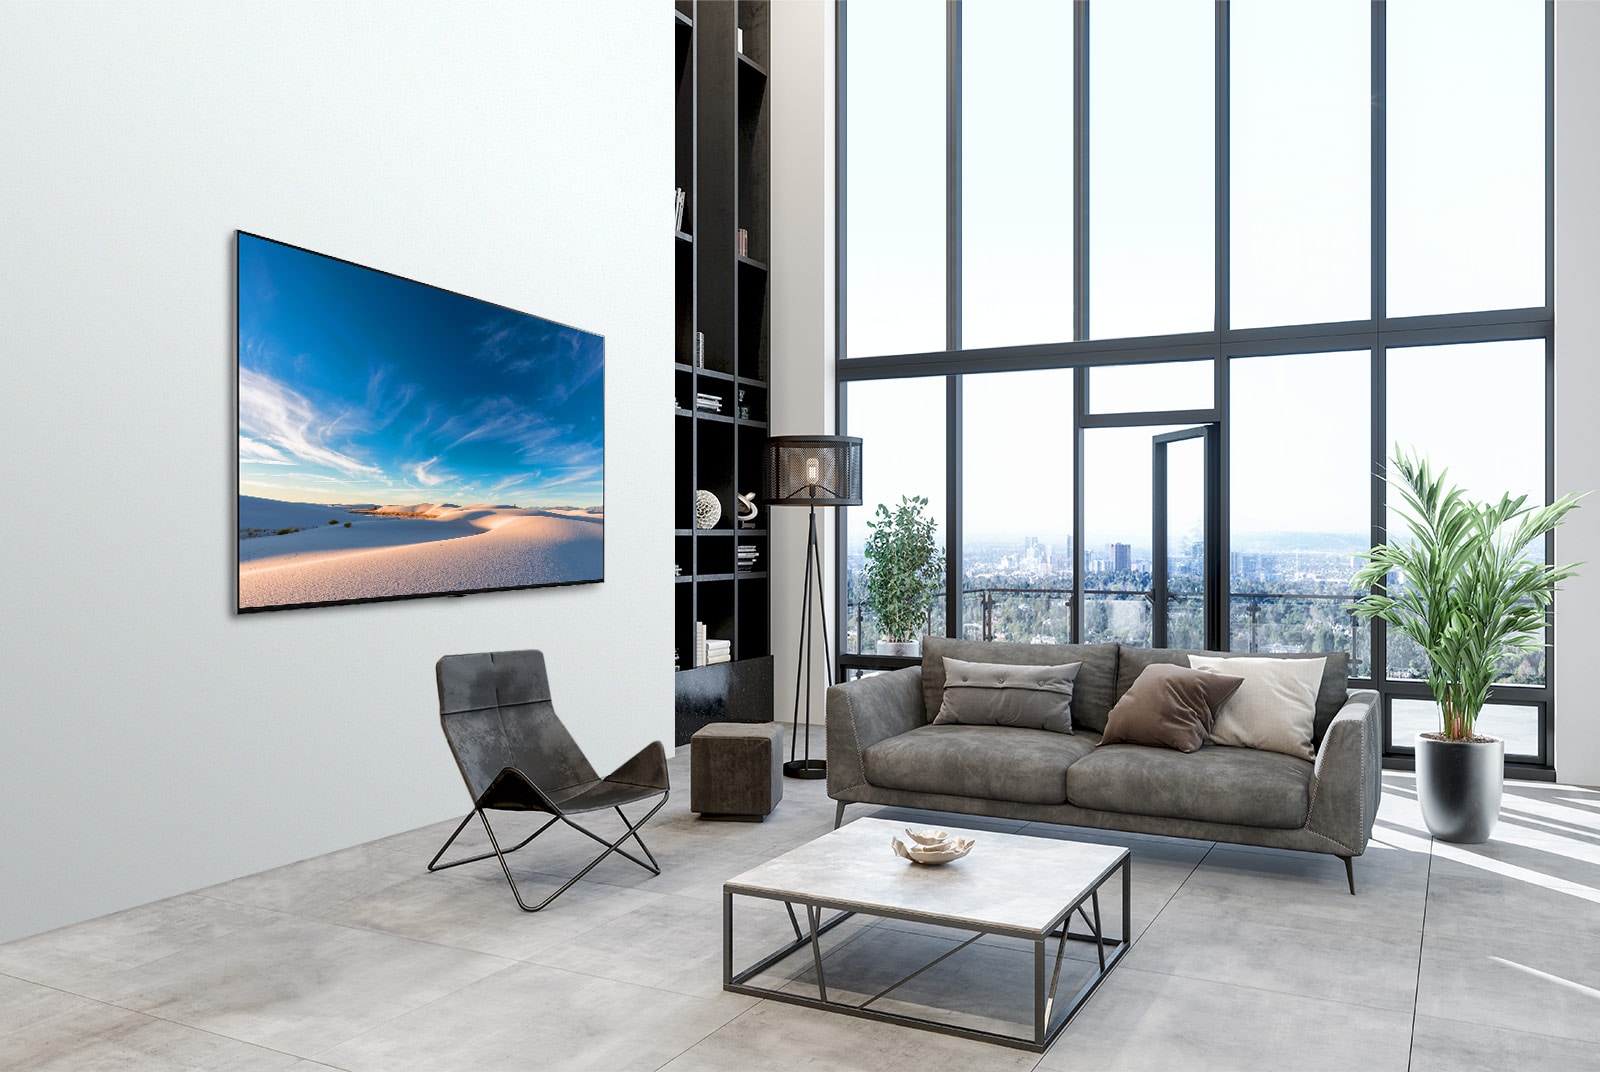 Televisor LG QNED montado plano contra la pared en un espacio interior moderno.